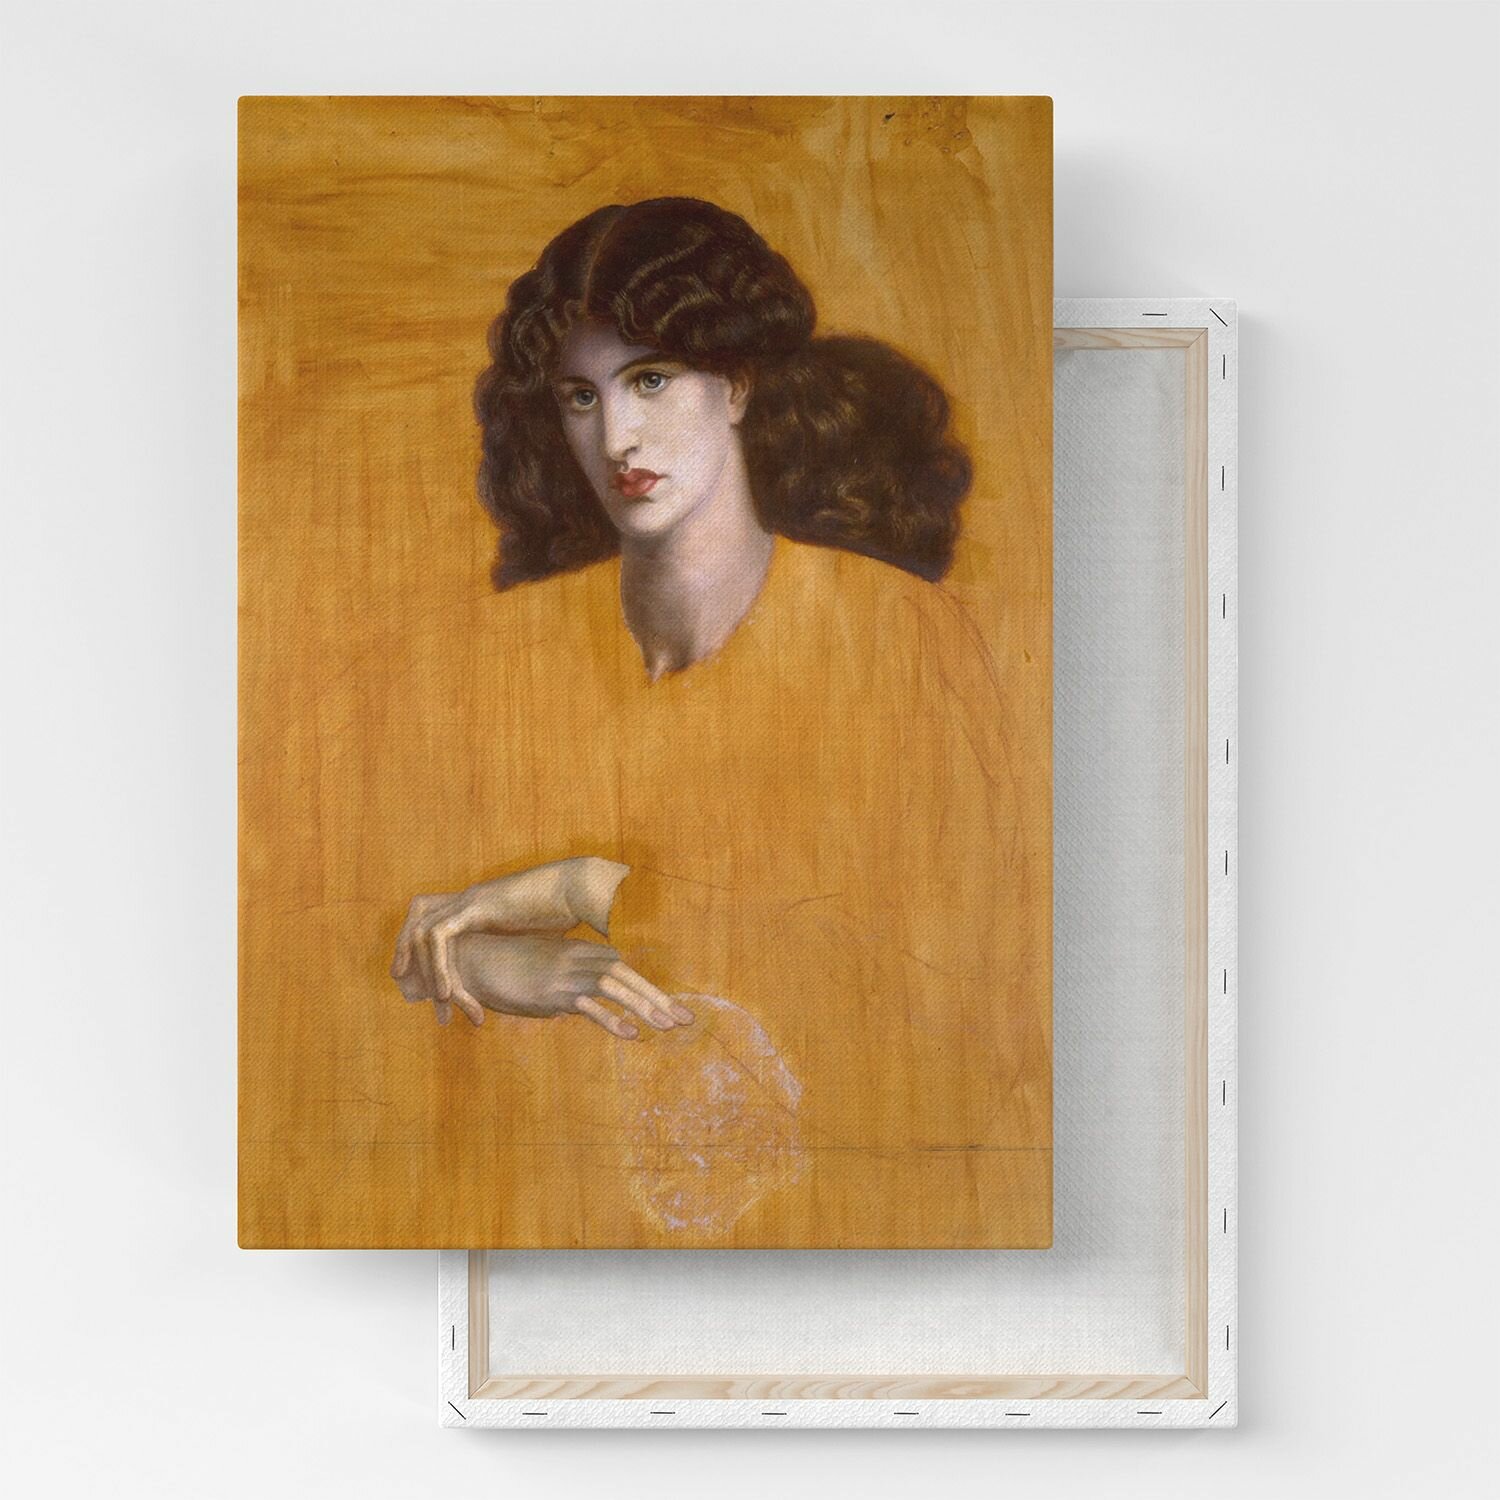 Картина на холсте, репродукция / Данте Габриэль Россетти - Женщина в окне / Размер 30 x 40 см